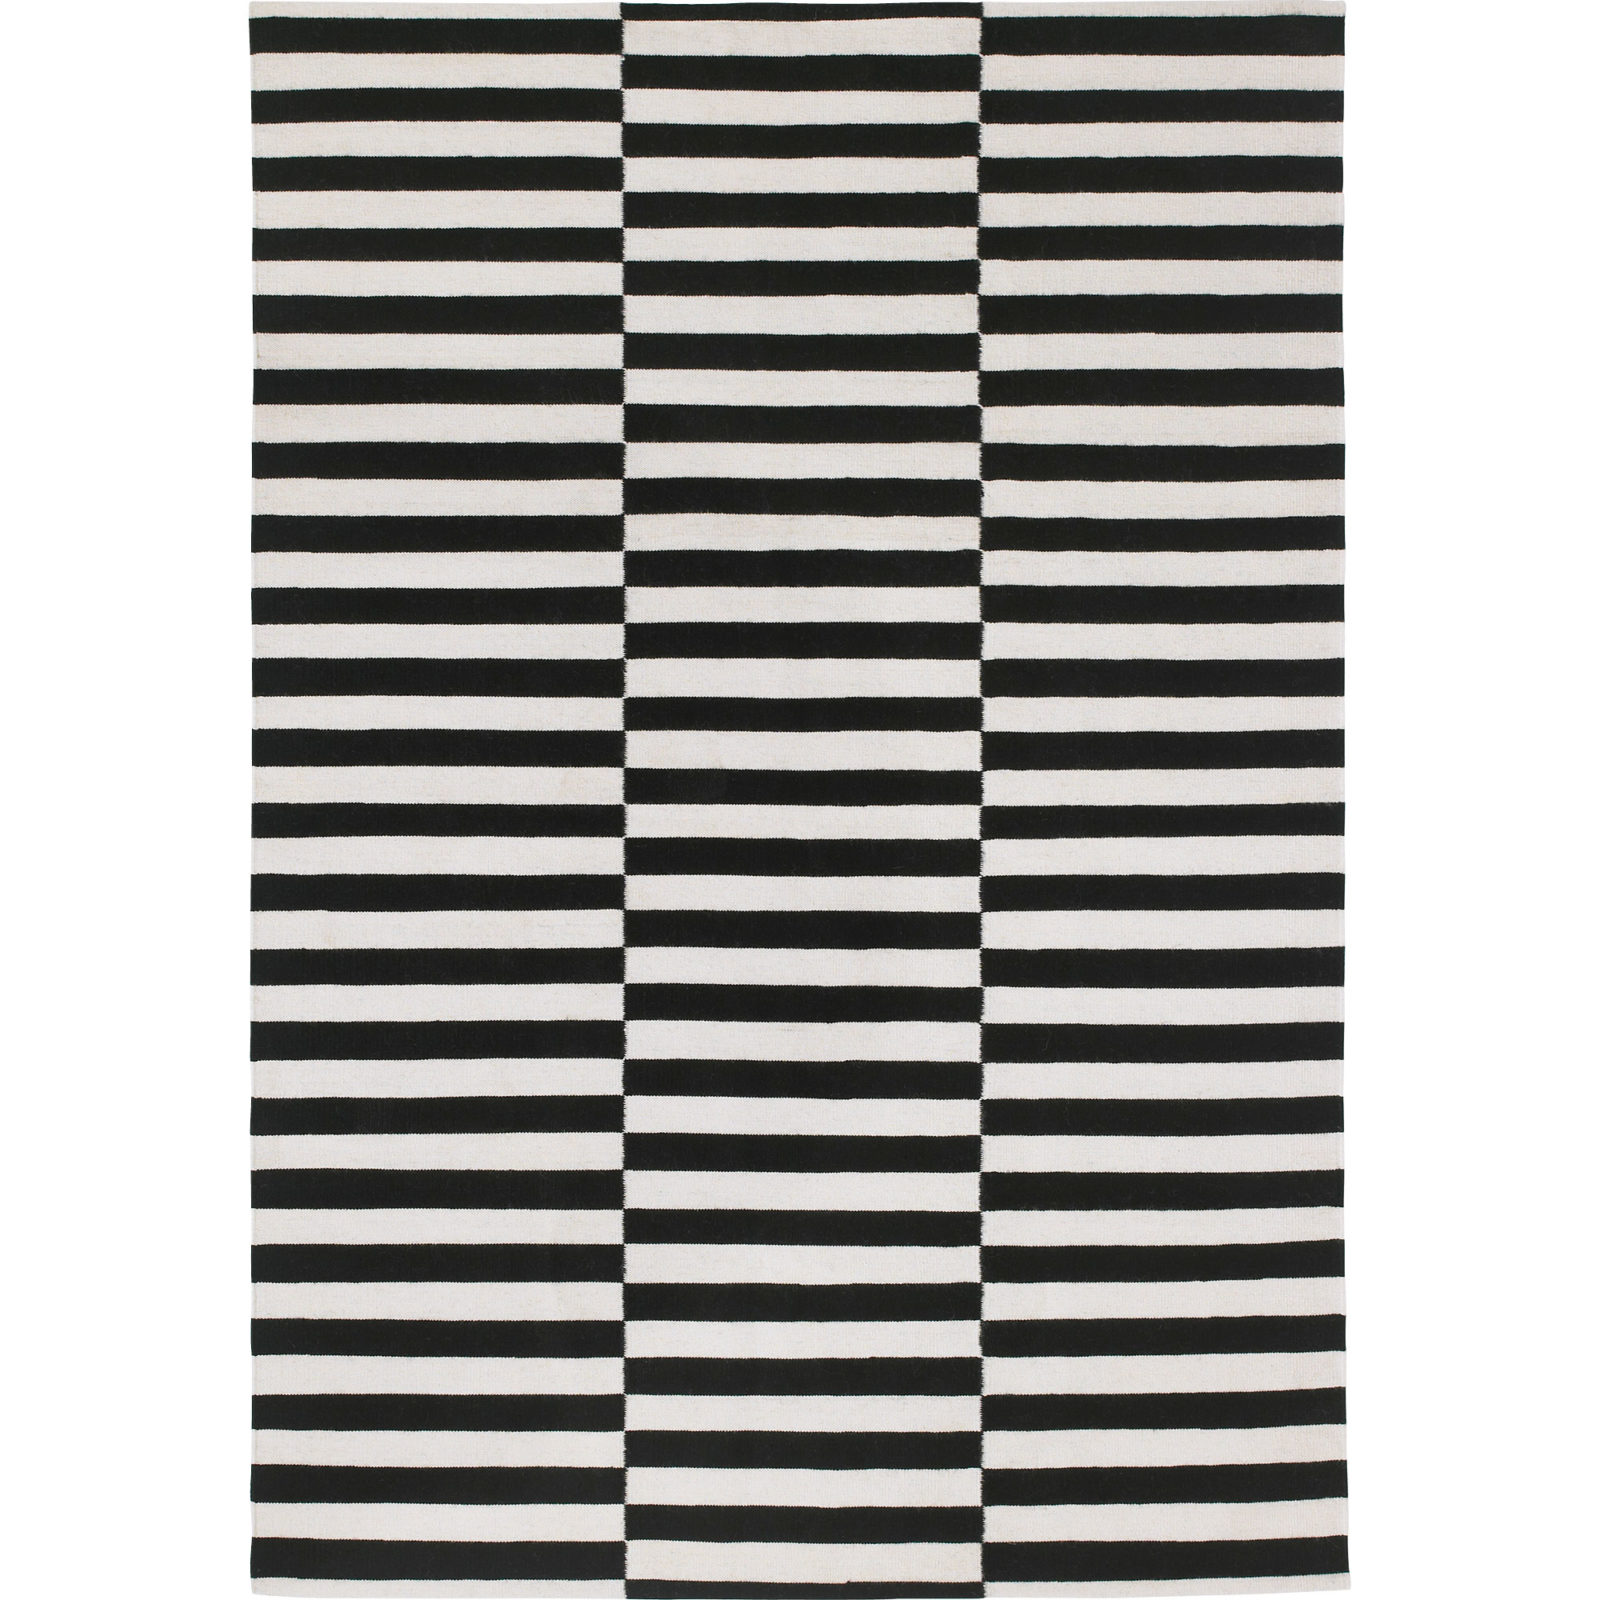 Ullmatta med svartvitt mönster med asymmetriska linjer, STOCKHOLM RAND.